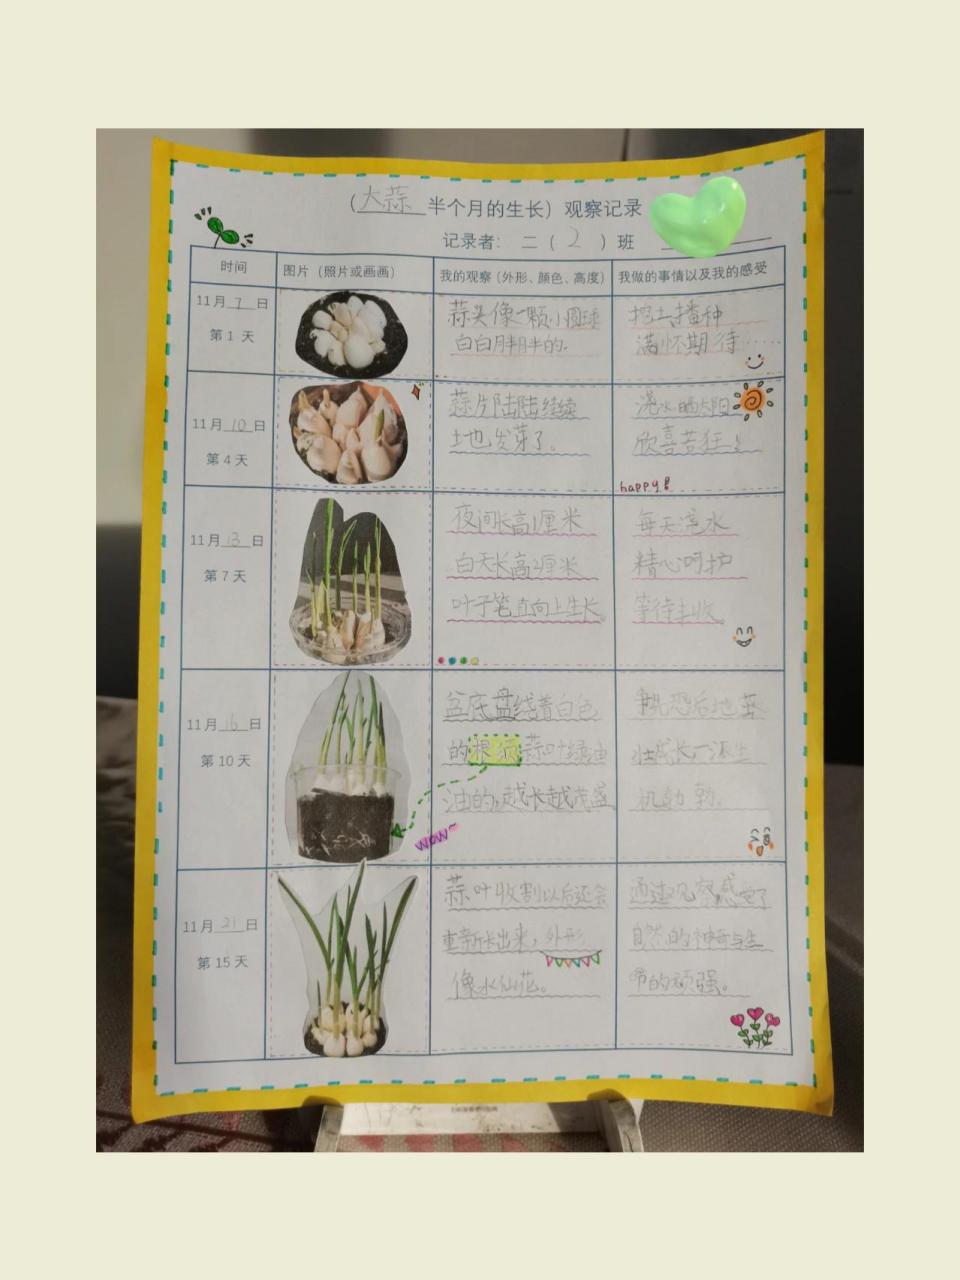 大蒜植物成长记录表格图片